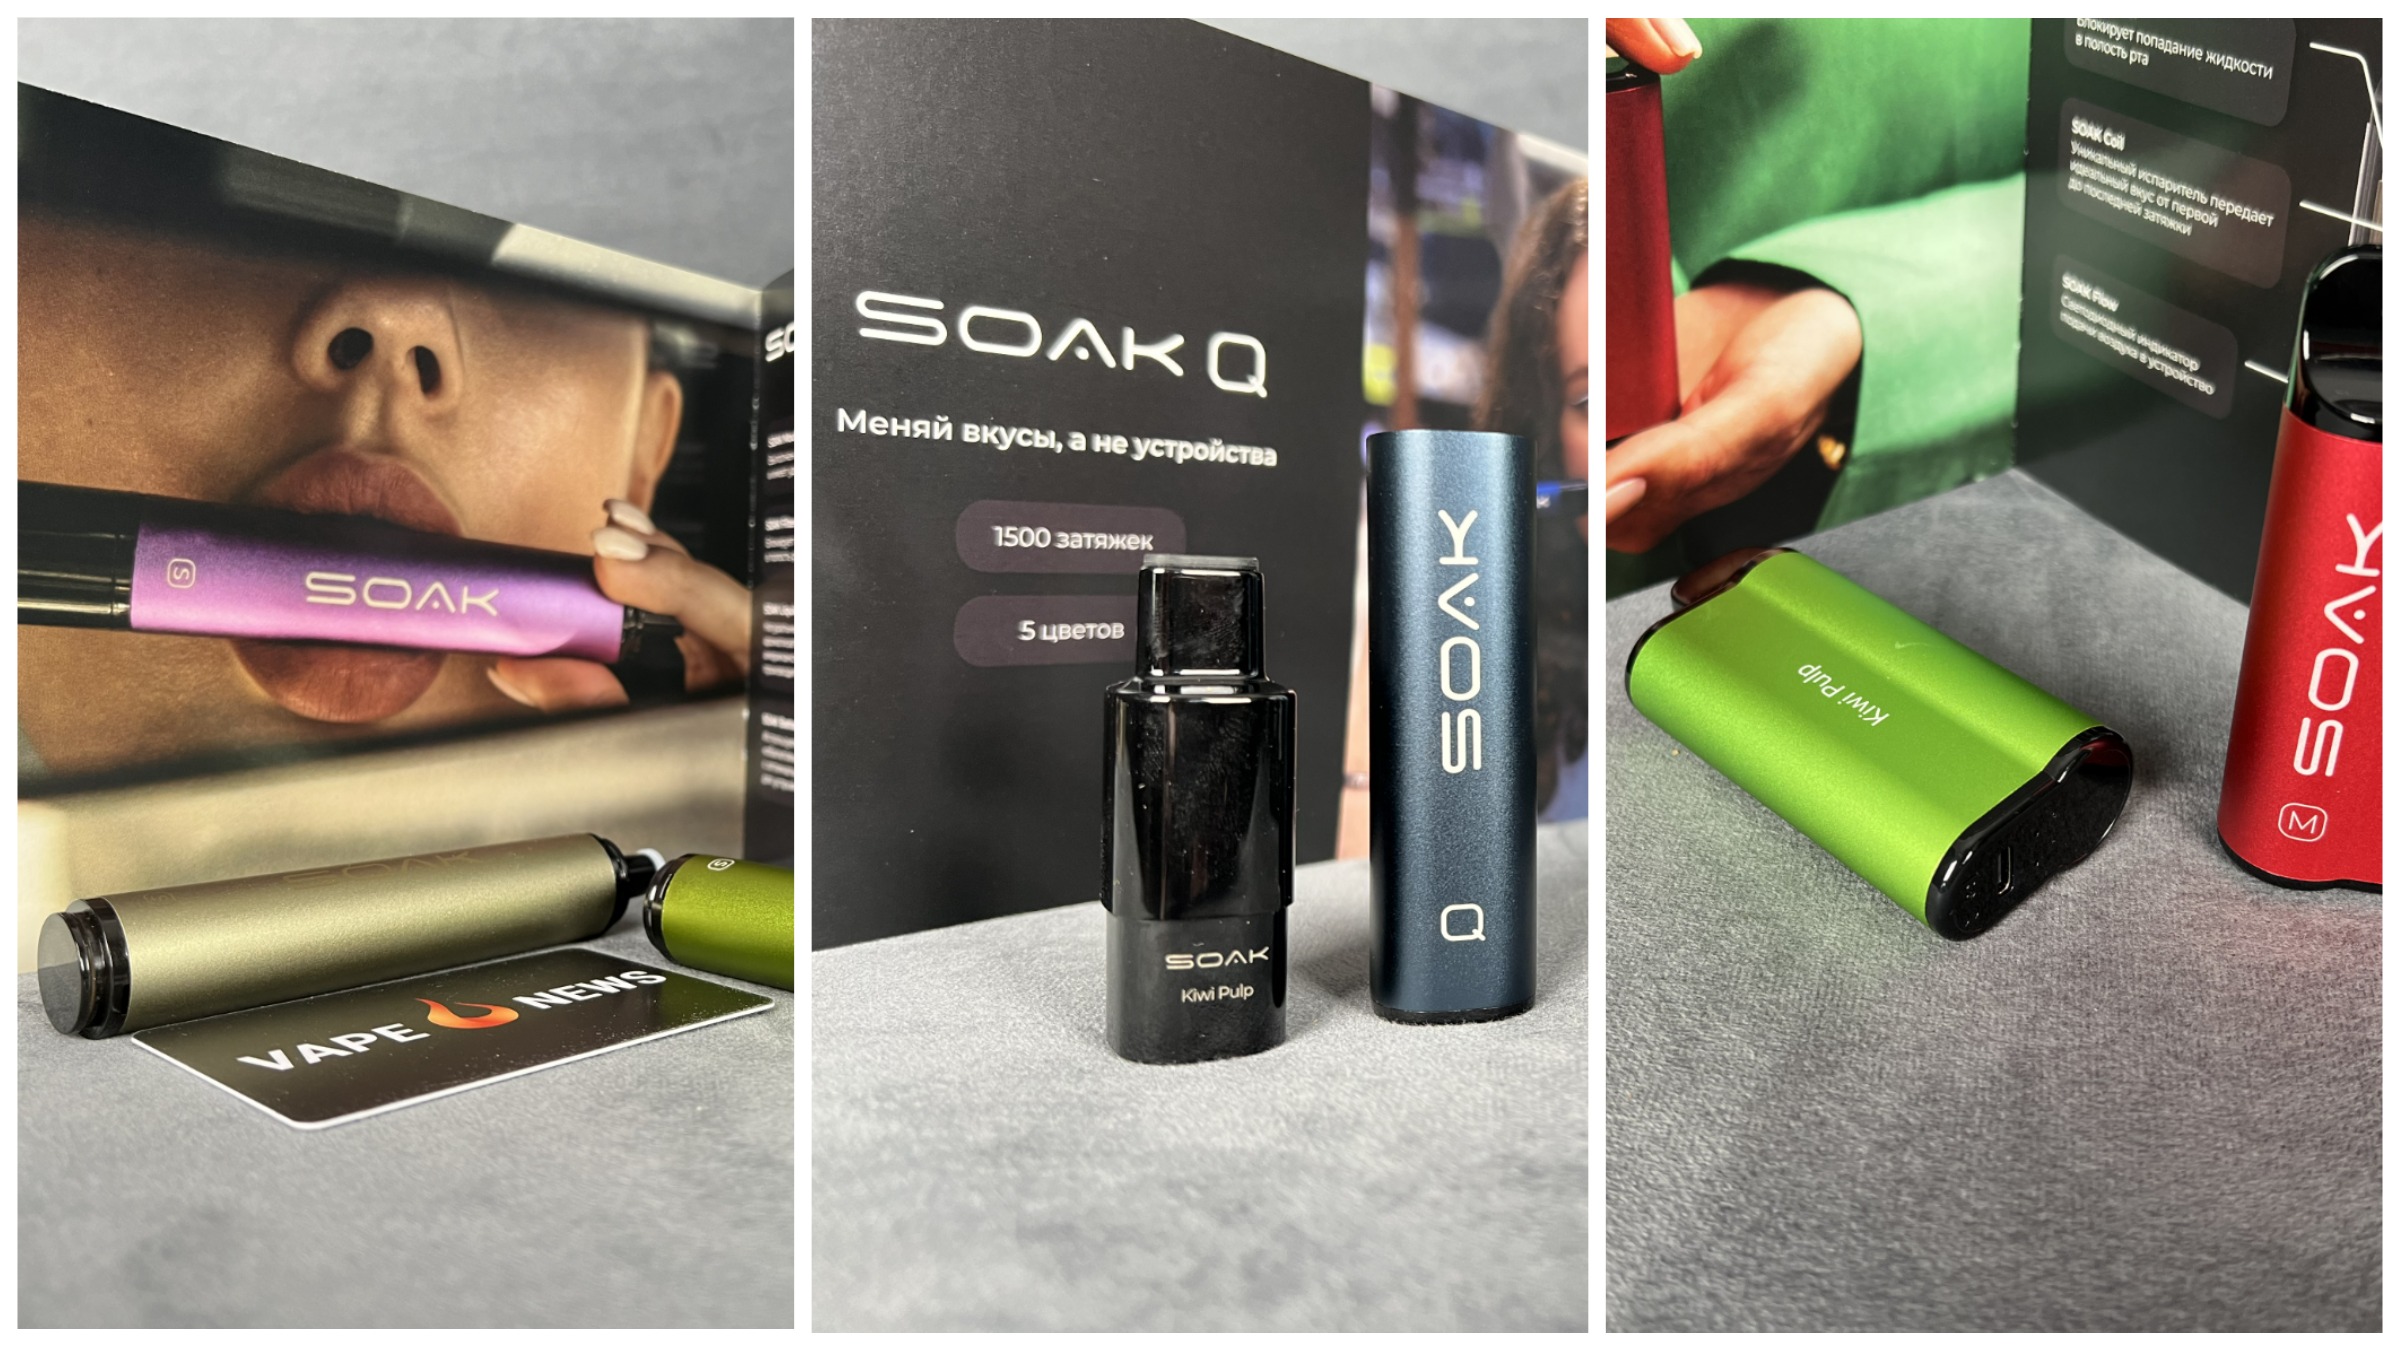 POD-система SOAK Q и одноразовые электронные сигареты SOAK: обзор